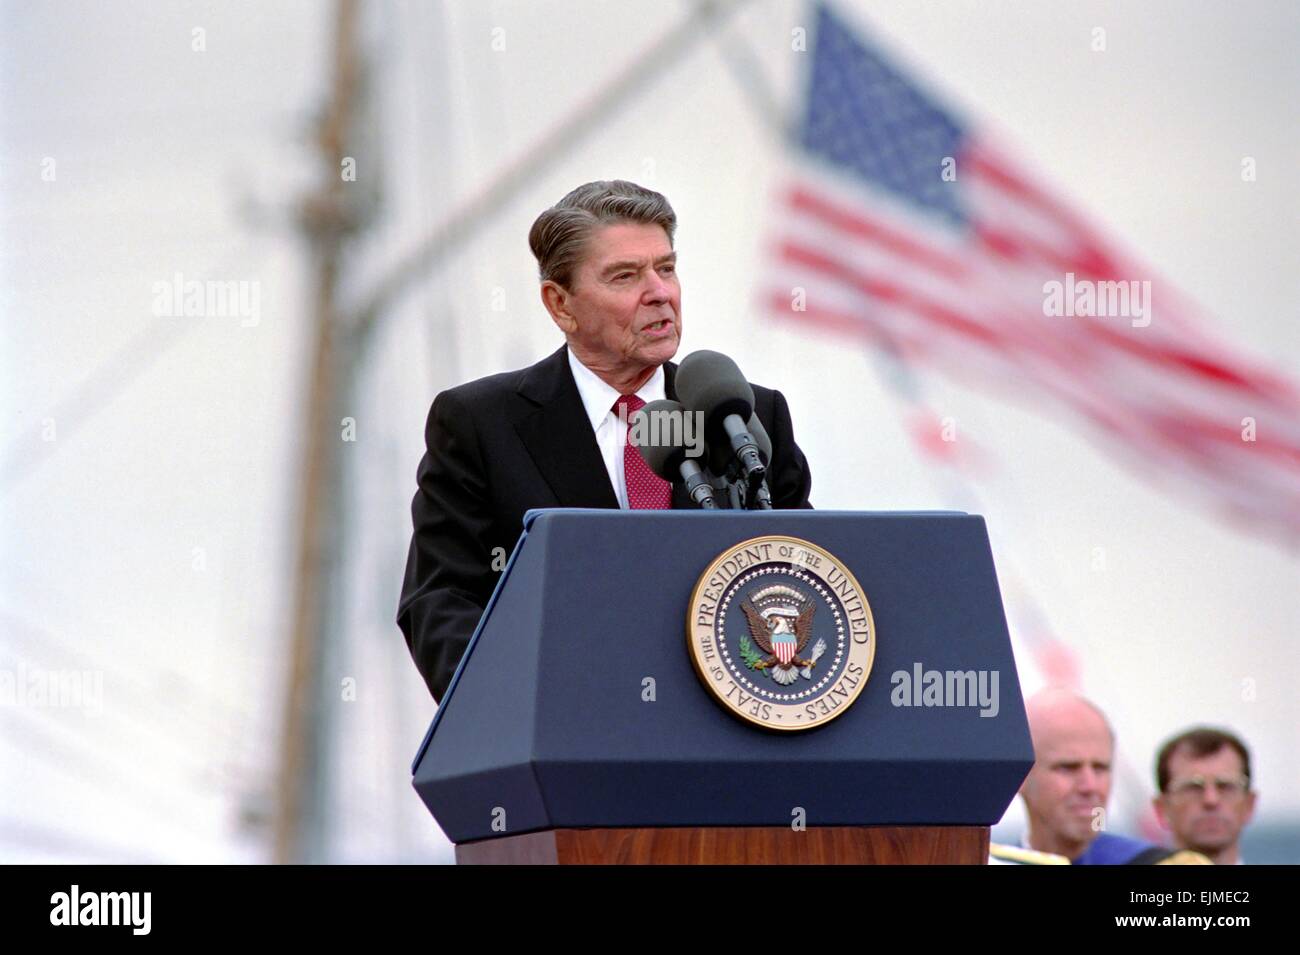 US-Präsident Ronald Reagan gibt die Eröffnungsrede bei der United States Coast Guard Academy Klasse 1988 Abschlussfeier 18. Mai 1988 in New London, Connecticut. Stockfoto